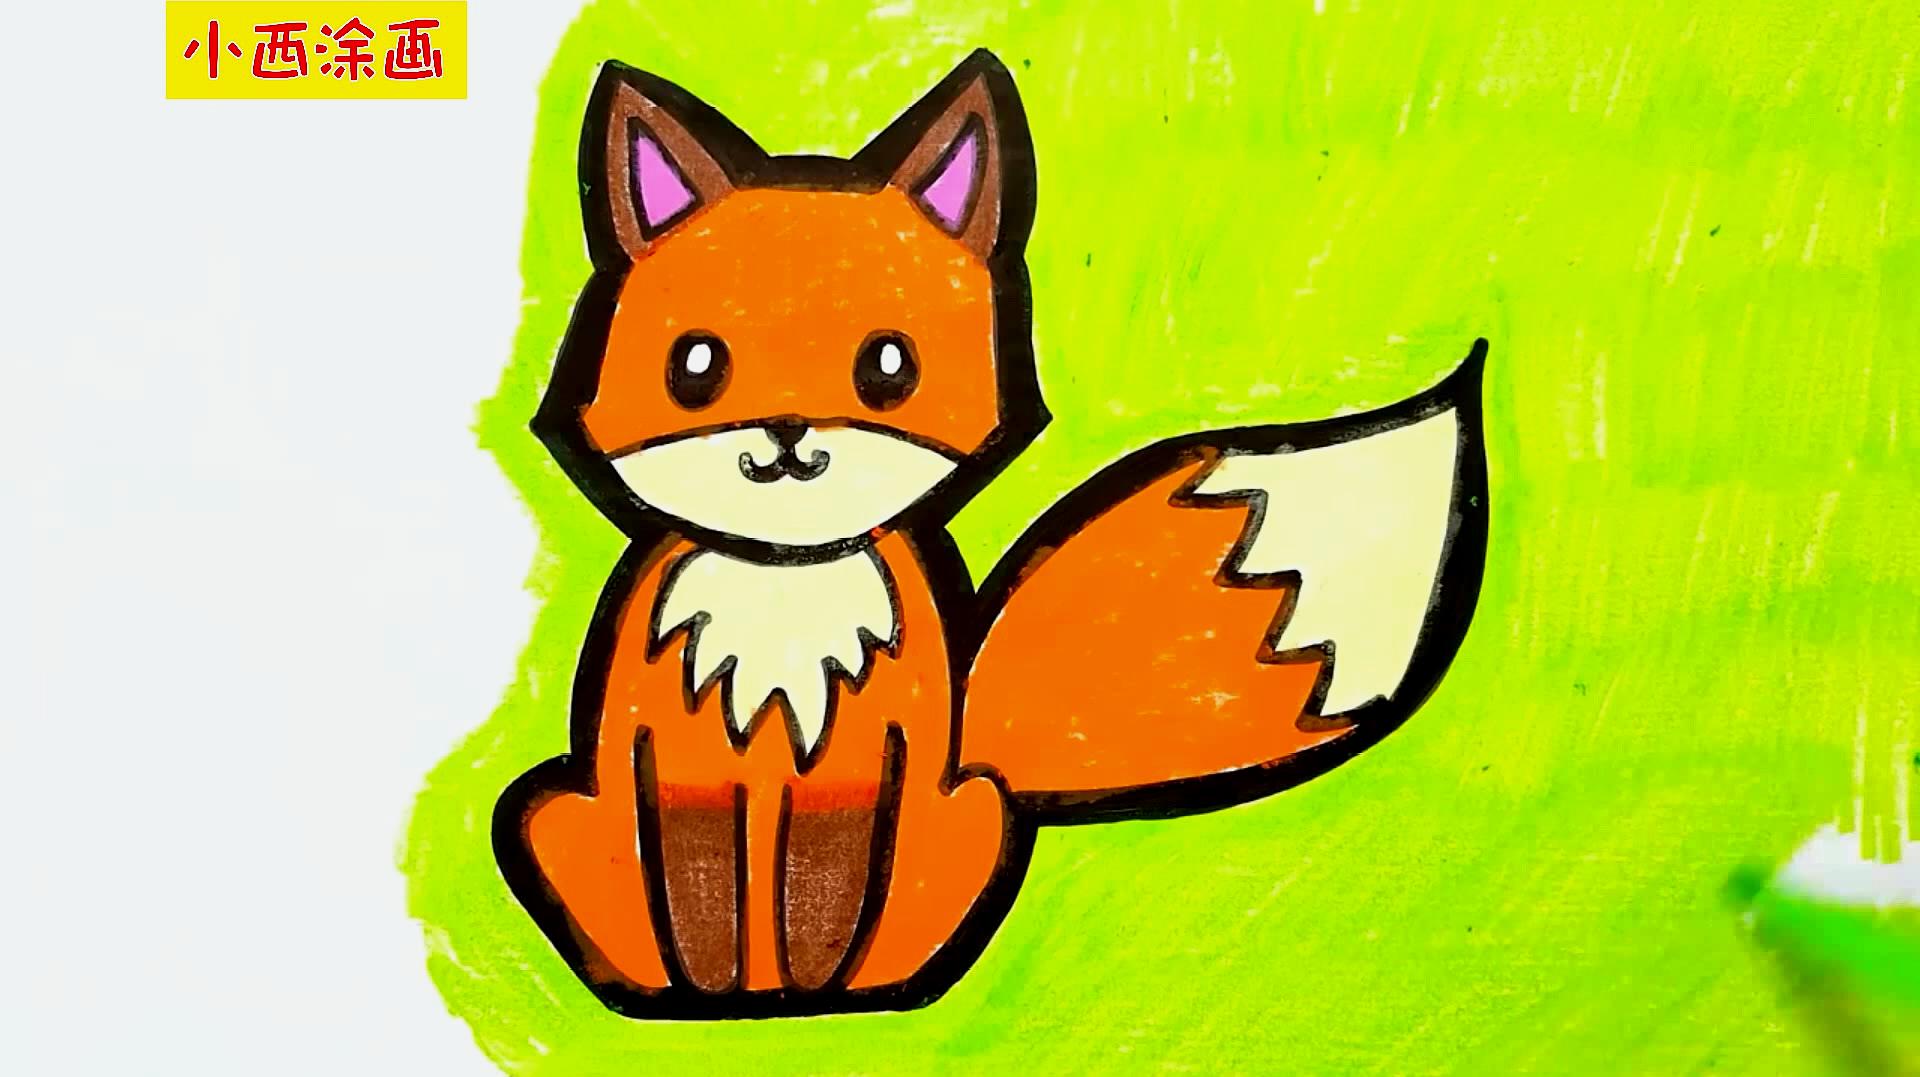 亲子趣味创意简笔画,亲子画一头可爱的小狐狸,色彩认知